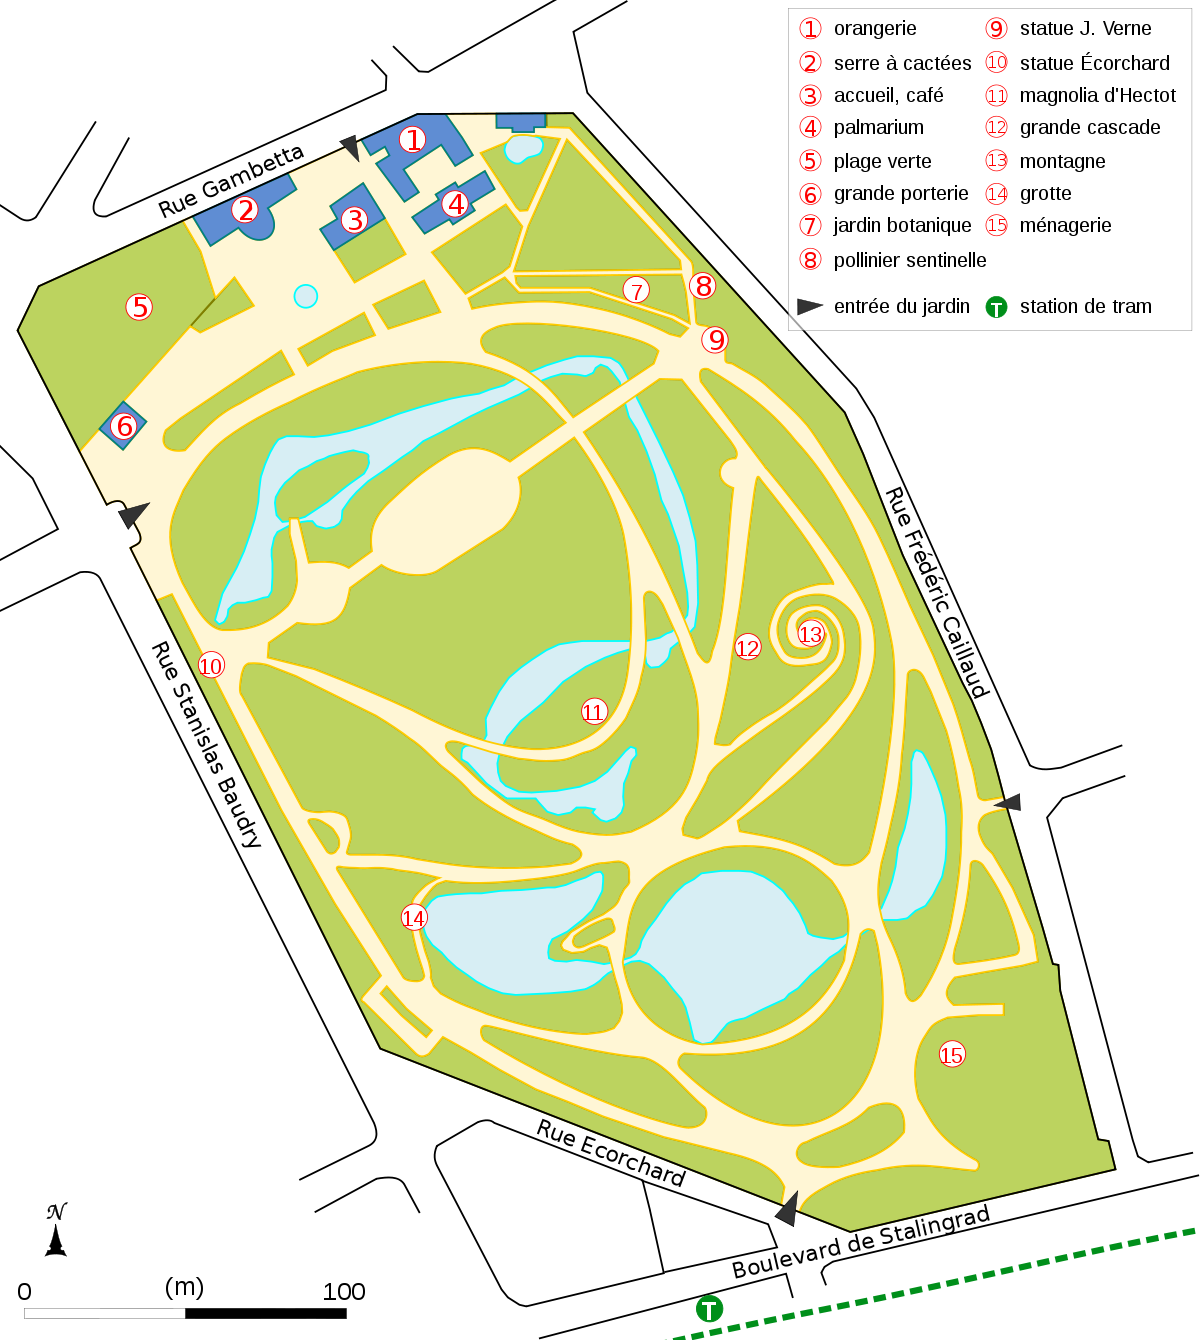 Plan du Jardin des plantes de Nantes.